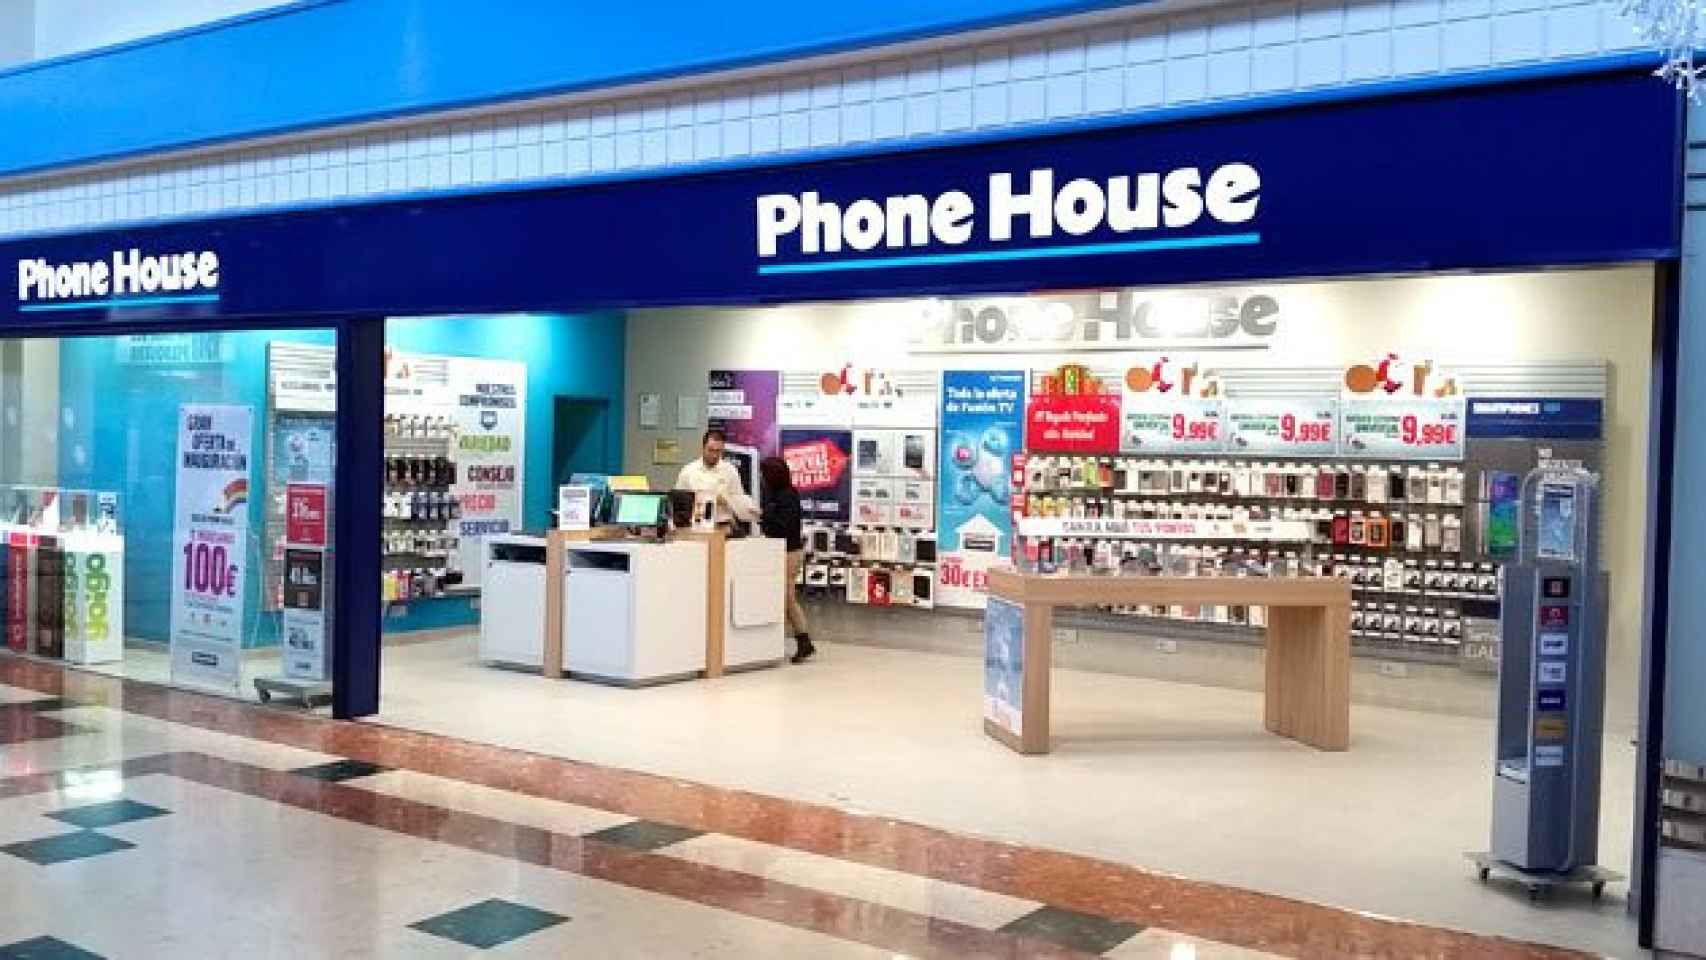 Tienda Phone House en un centro comercial / CG